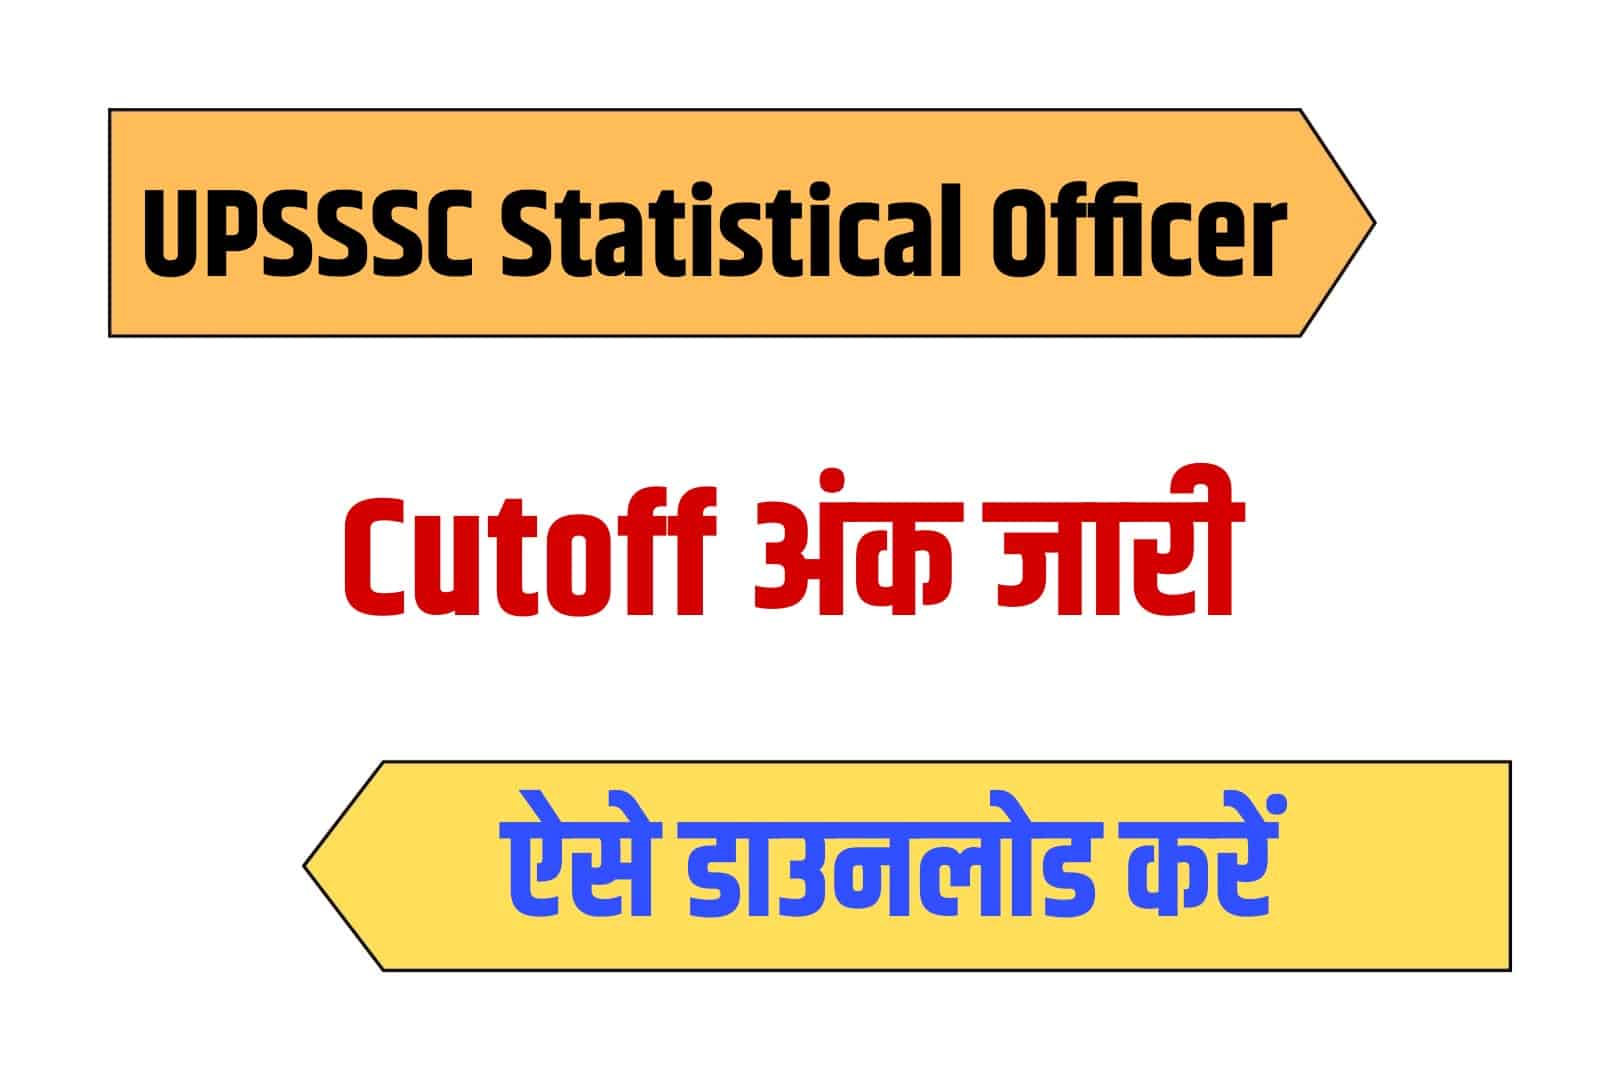 UPSSSC Statistical Officer 2019 Cutoff | यूपीएसएसएससी स्टैटिस्टिकल ऑफिसर कटऑफ